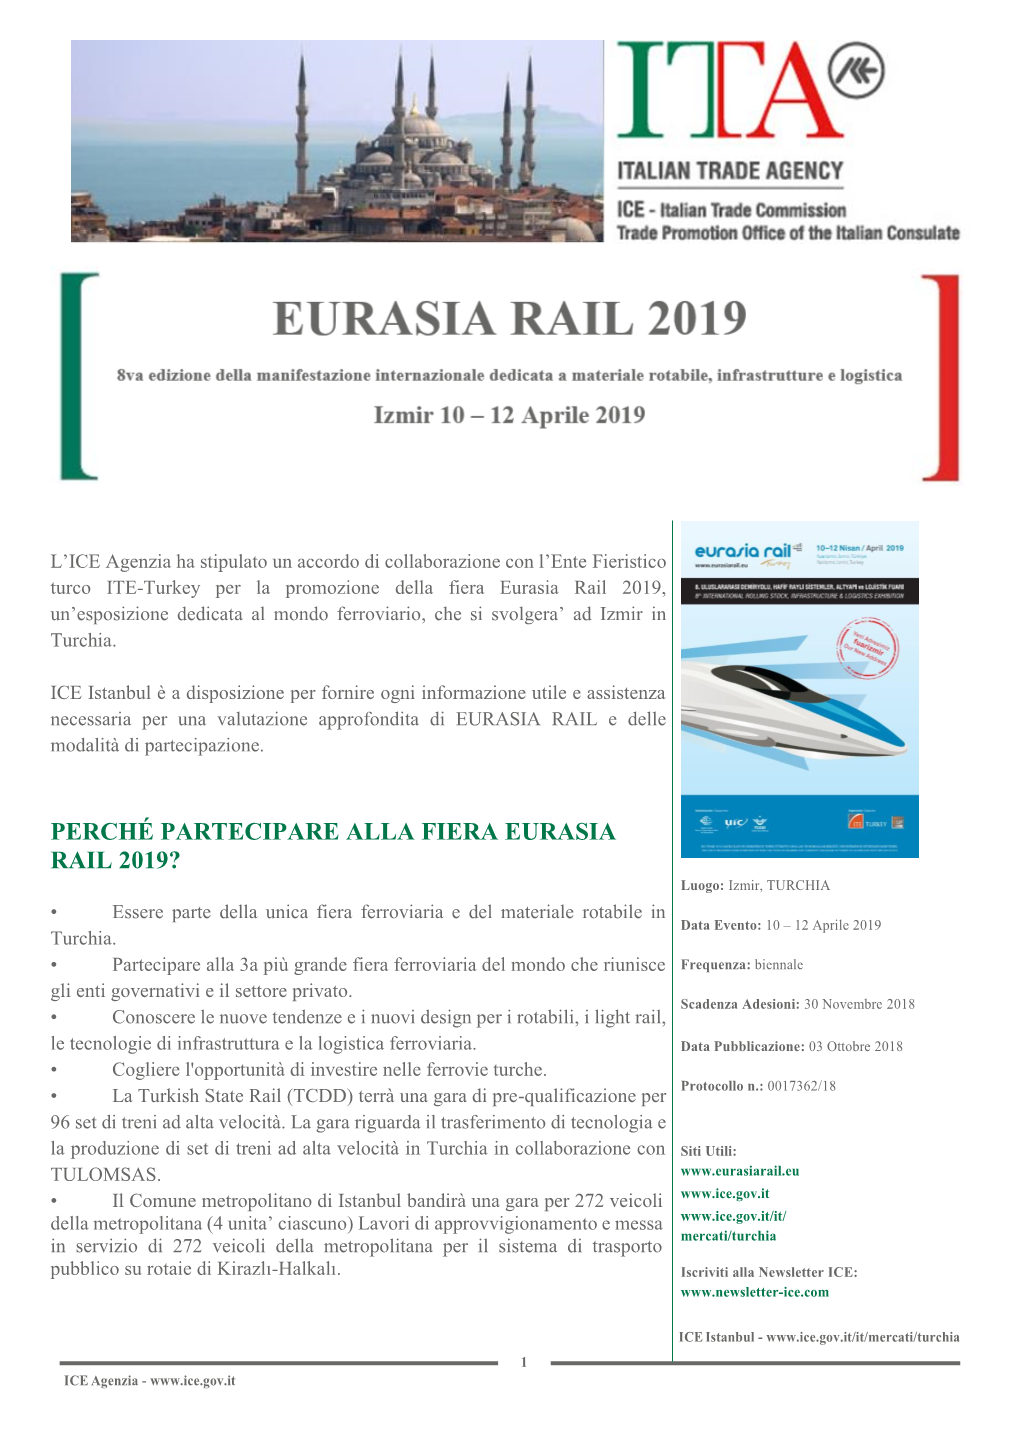 Perché Partecipare Alla Fiera Eurasia Rail 2019?